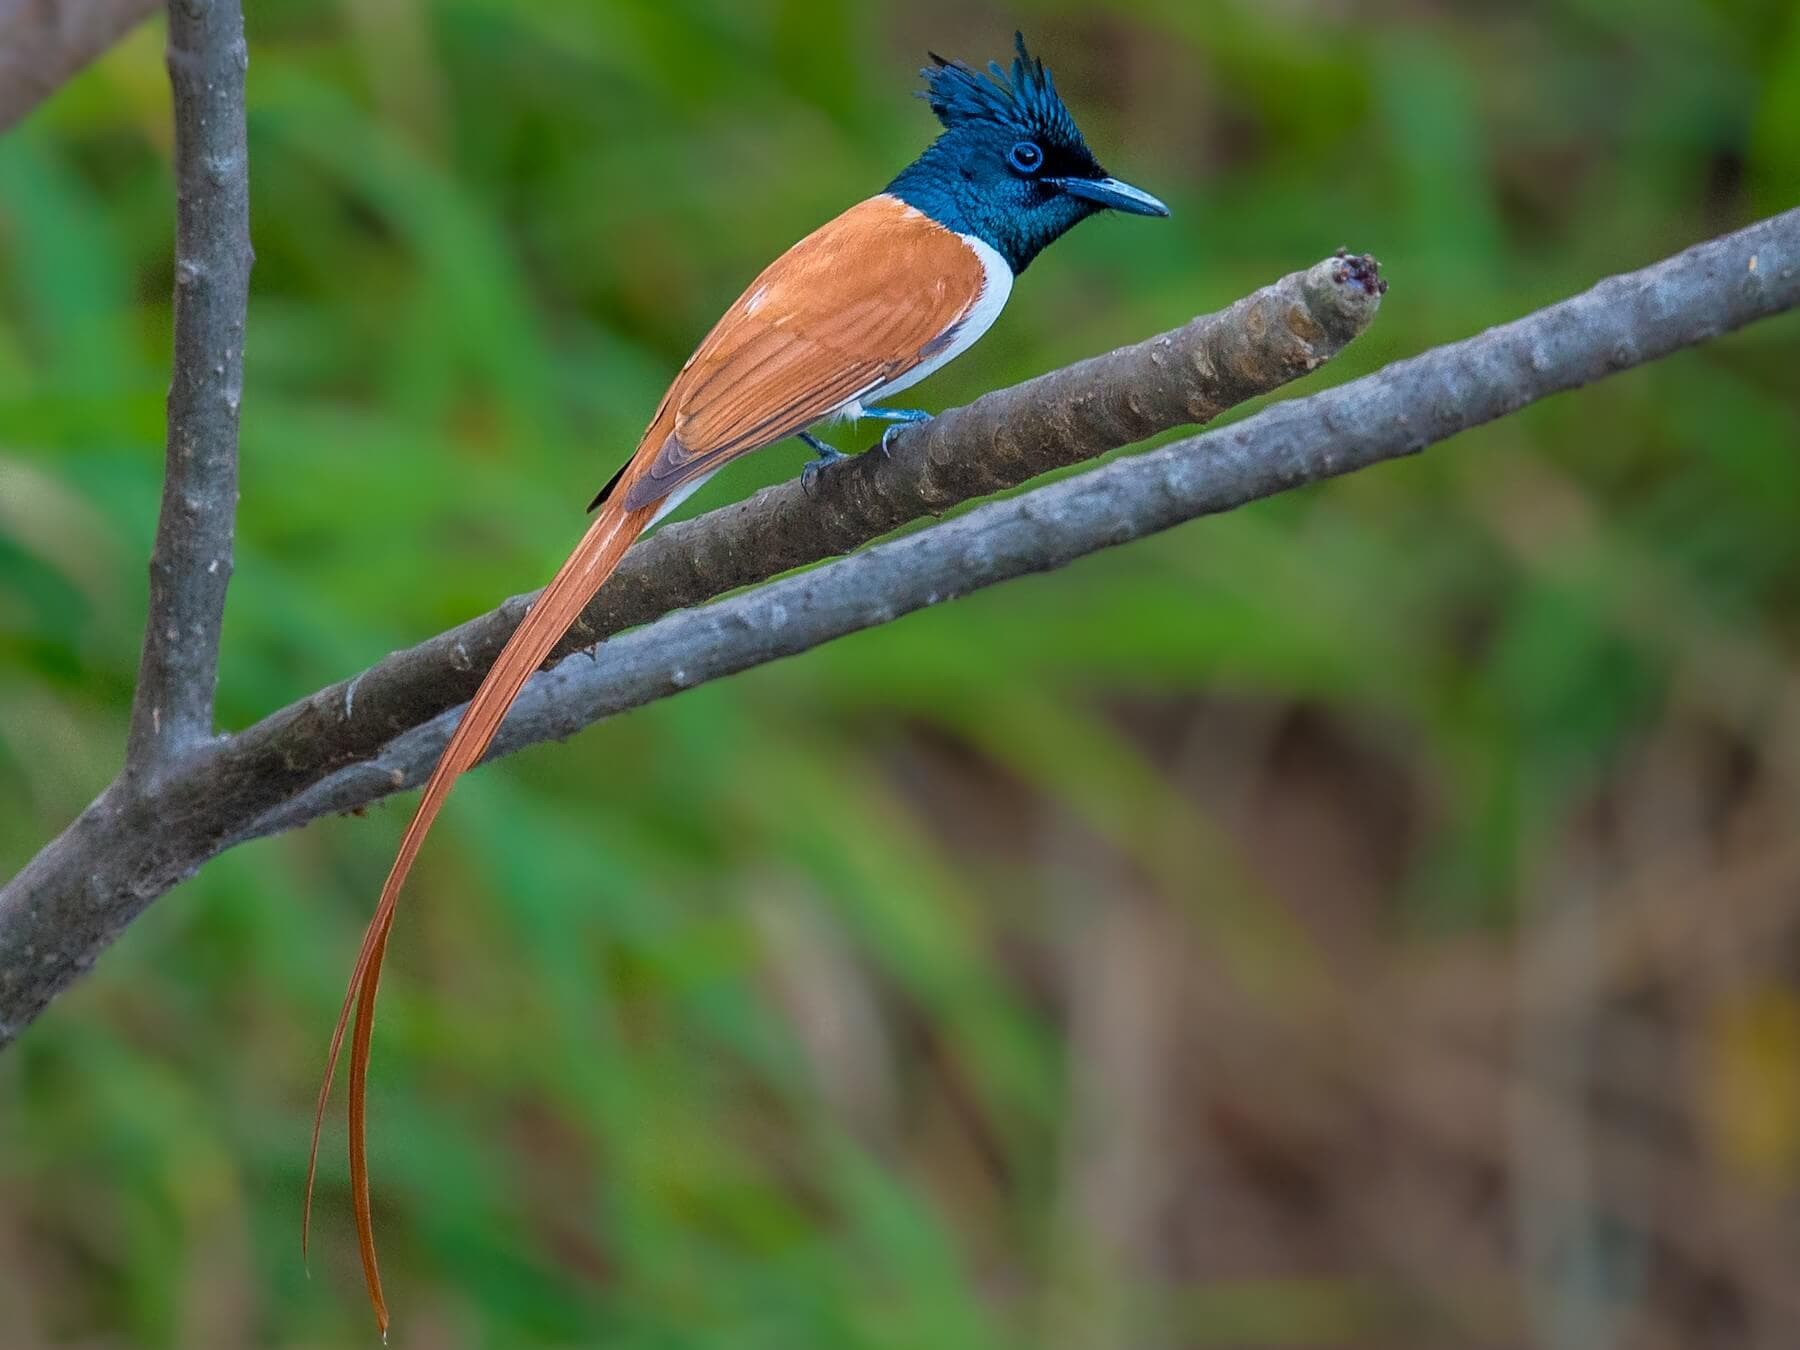  Ein anmutig aussehender Fliegenschnäpper, das erwachsene Männchen trägt einen langen, bandartigen Schwanz und lebt in der Gegend von Sigiriya